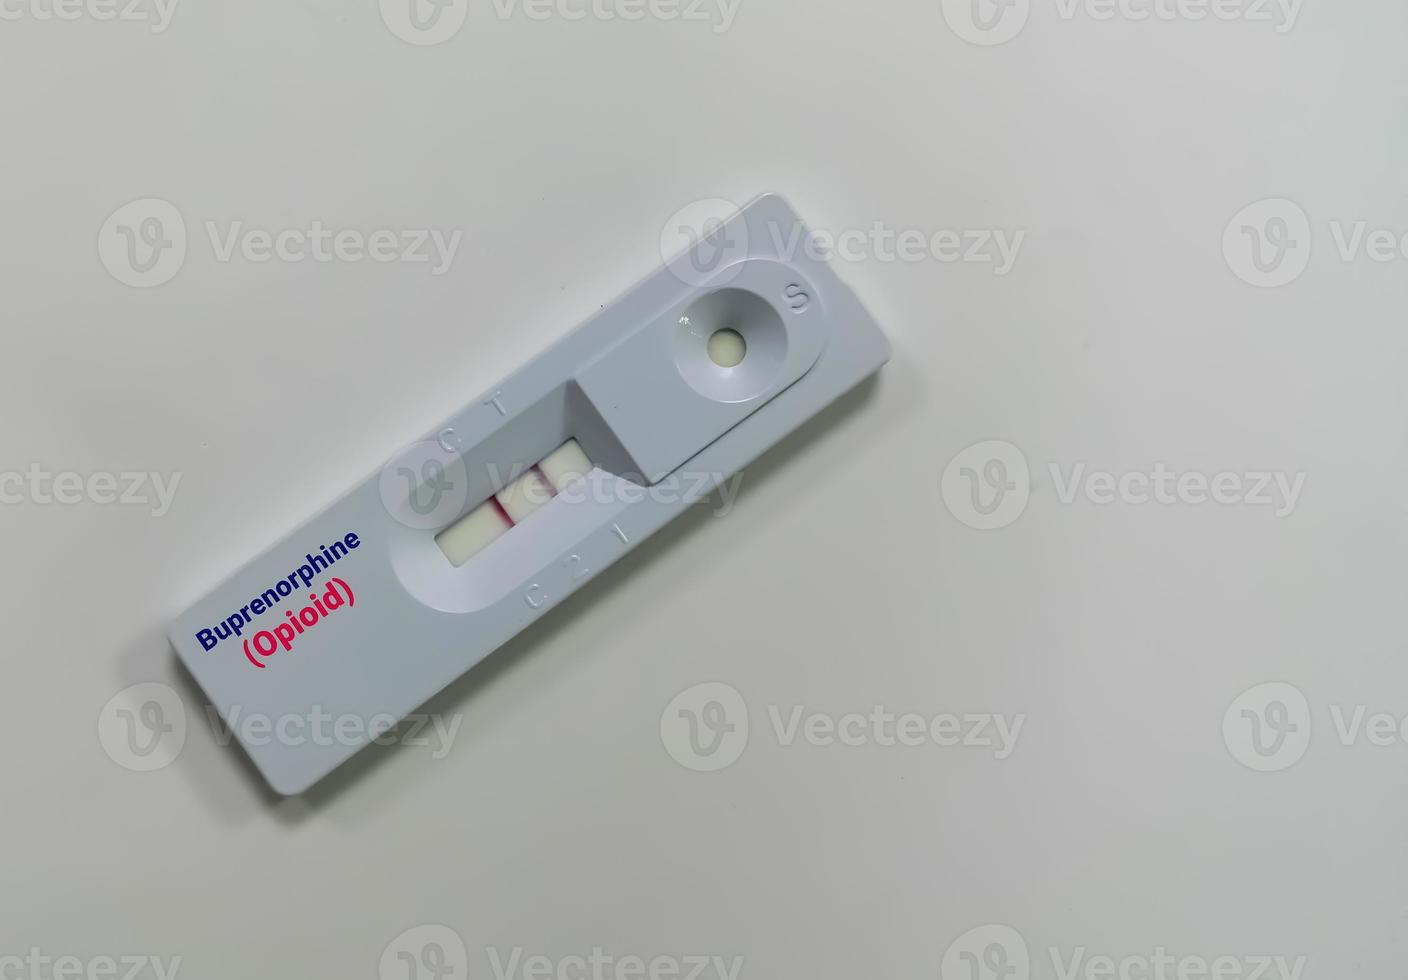 snabbt screeningtest för buprenorfin-bup är en opioid som oftast används för att behandla kroniskt opioidberoende. foto